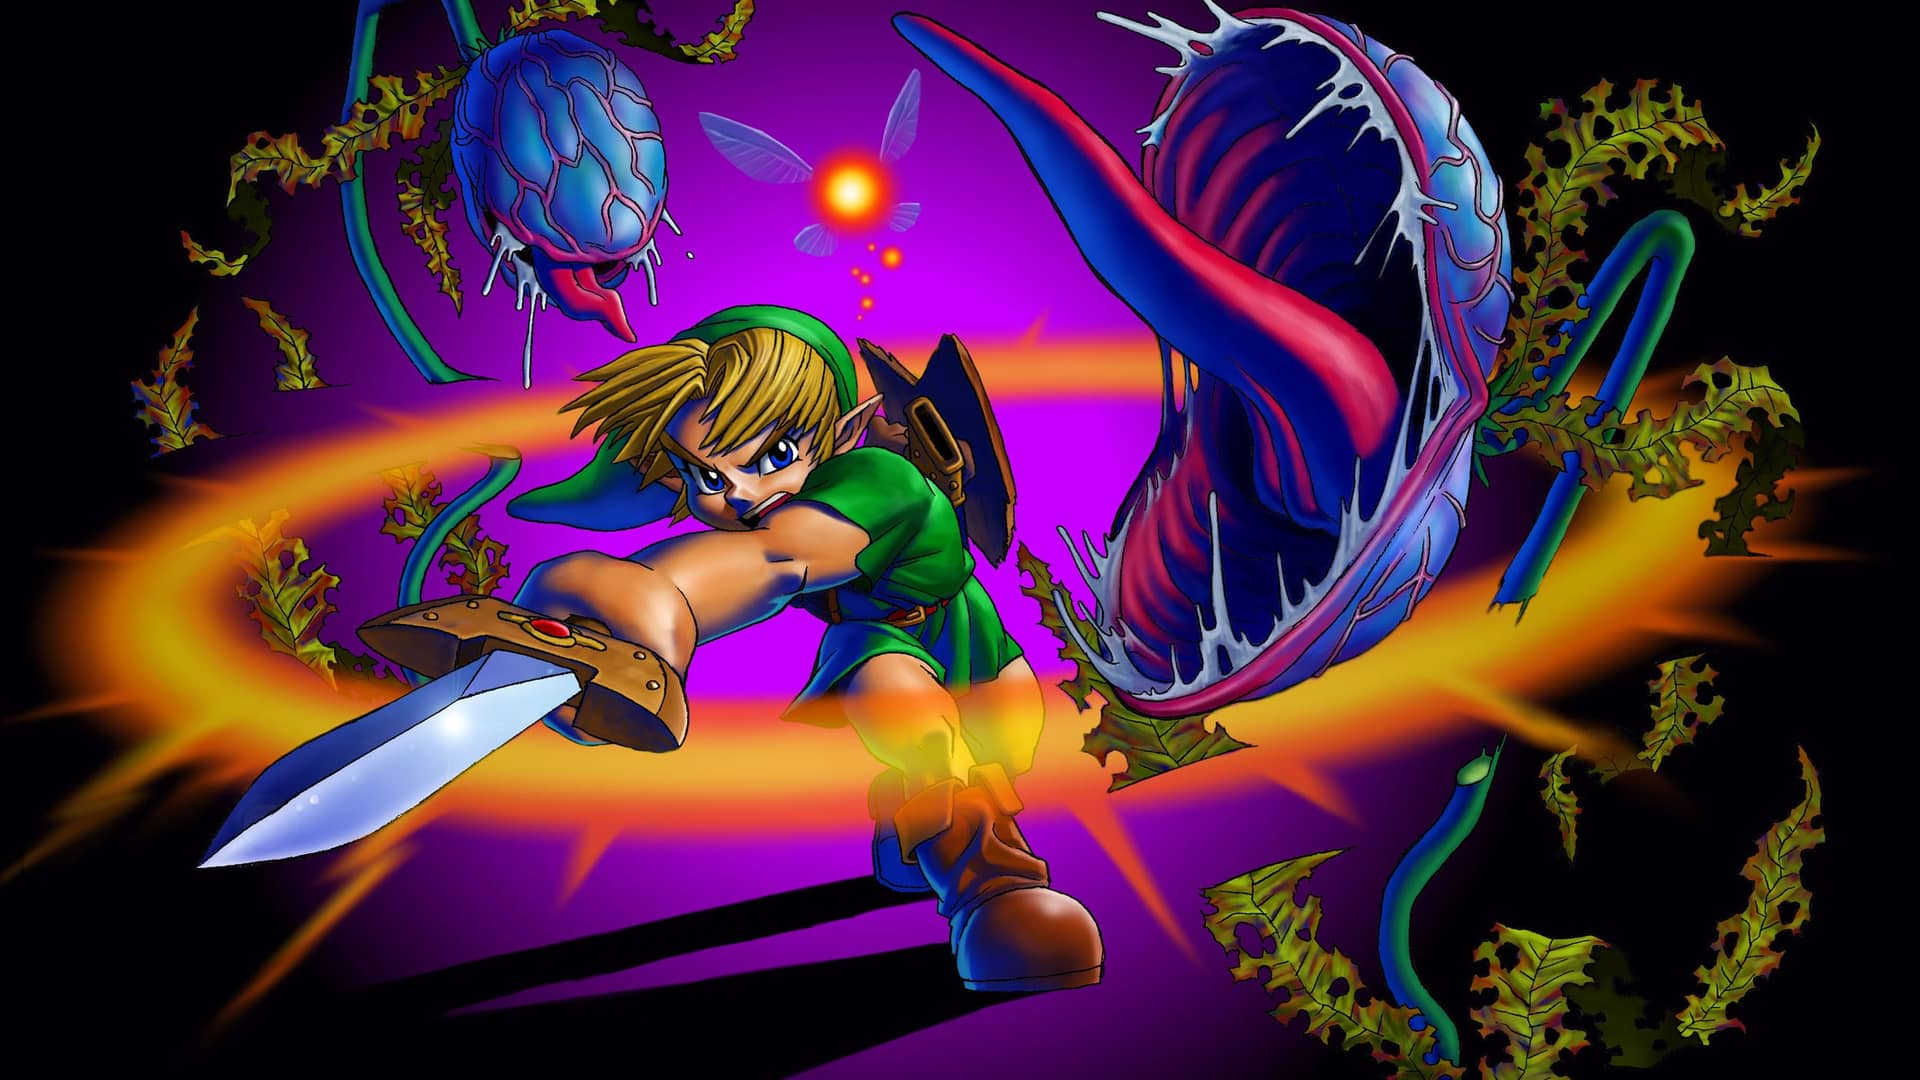 Artwork del juego The Legend of Zelda: Ocarina of Time que es uno de los mejores juegos de n64